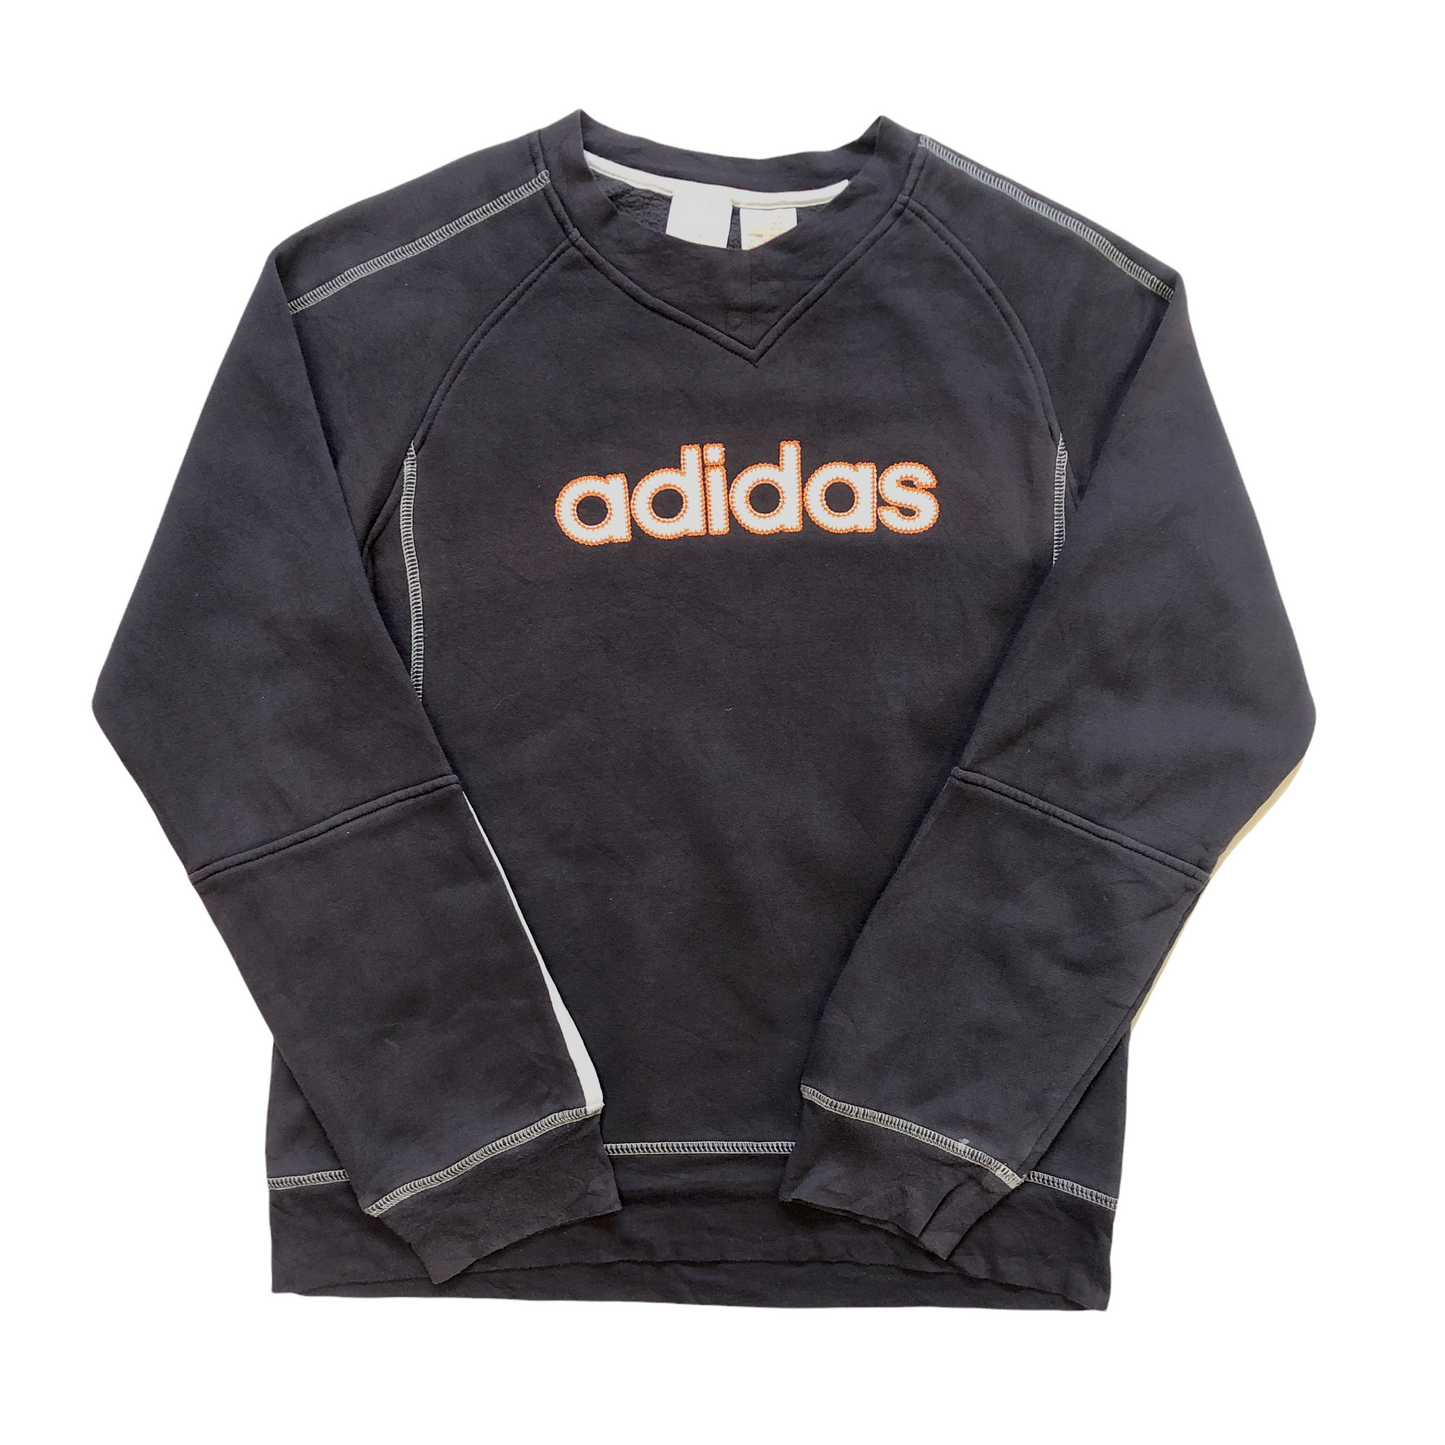 Vintage Adidas Sweatshirt (Age 12)